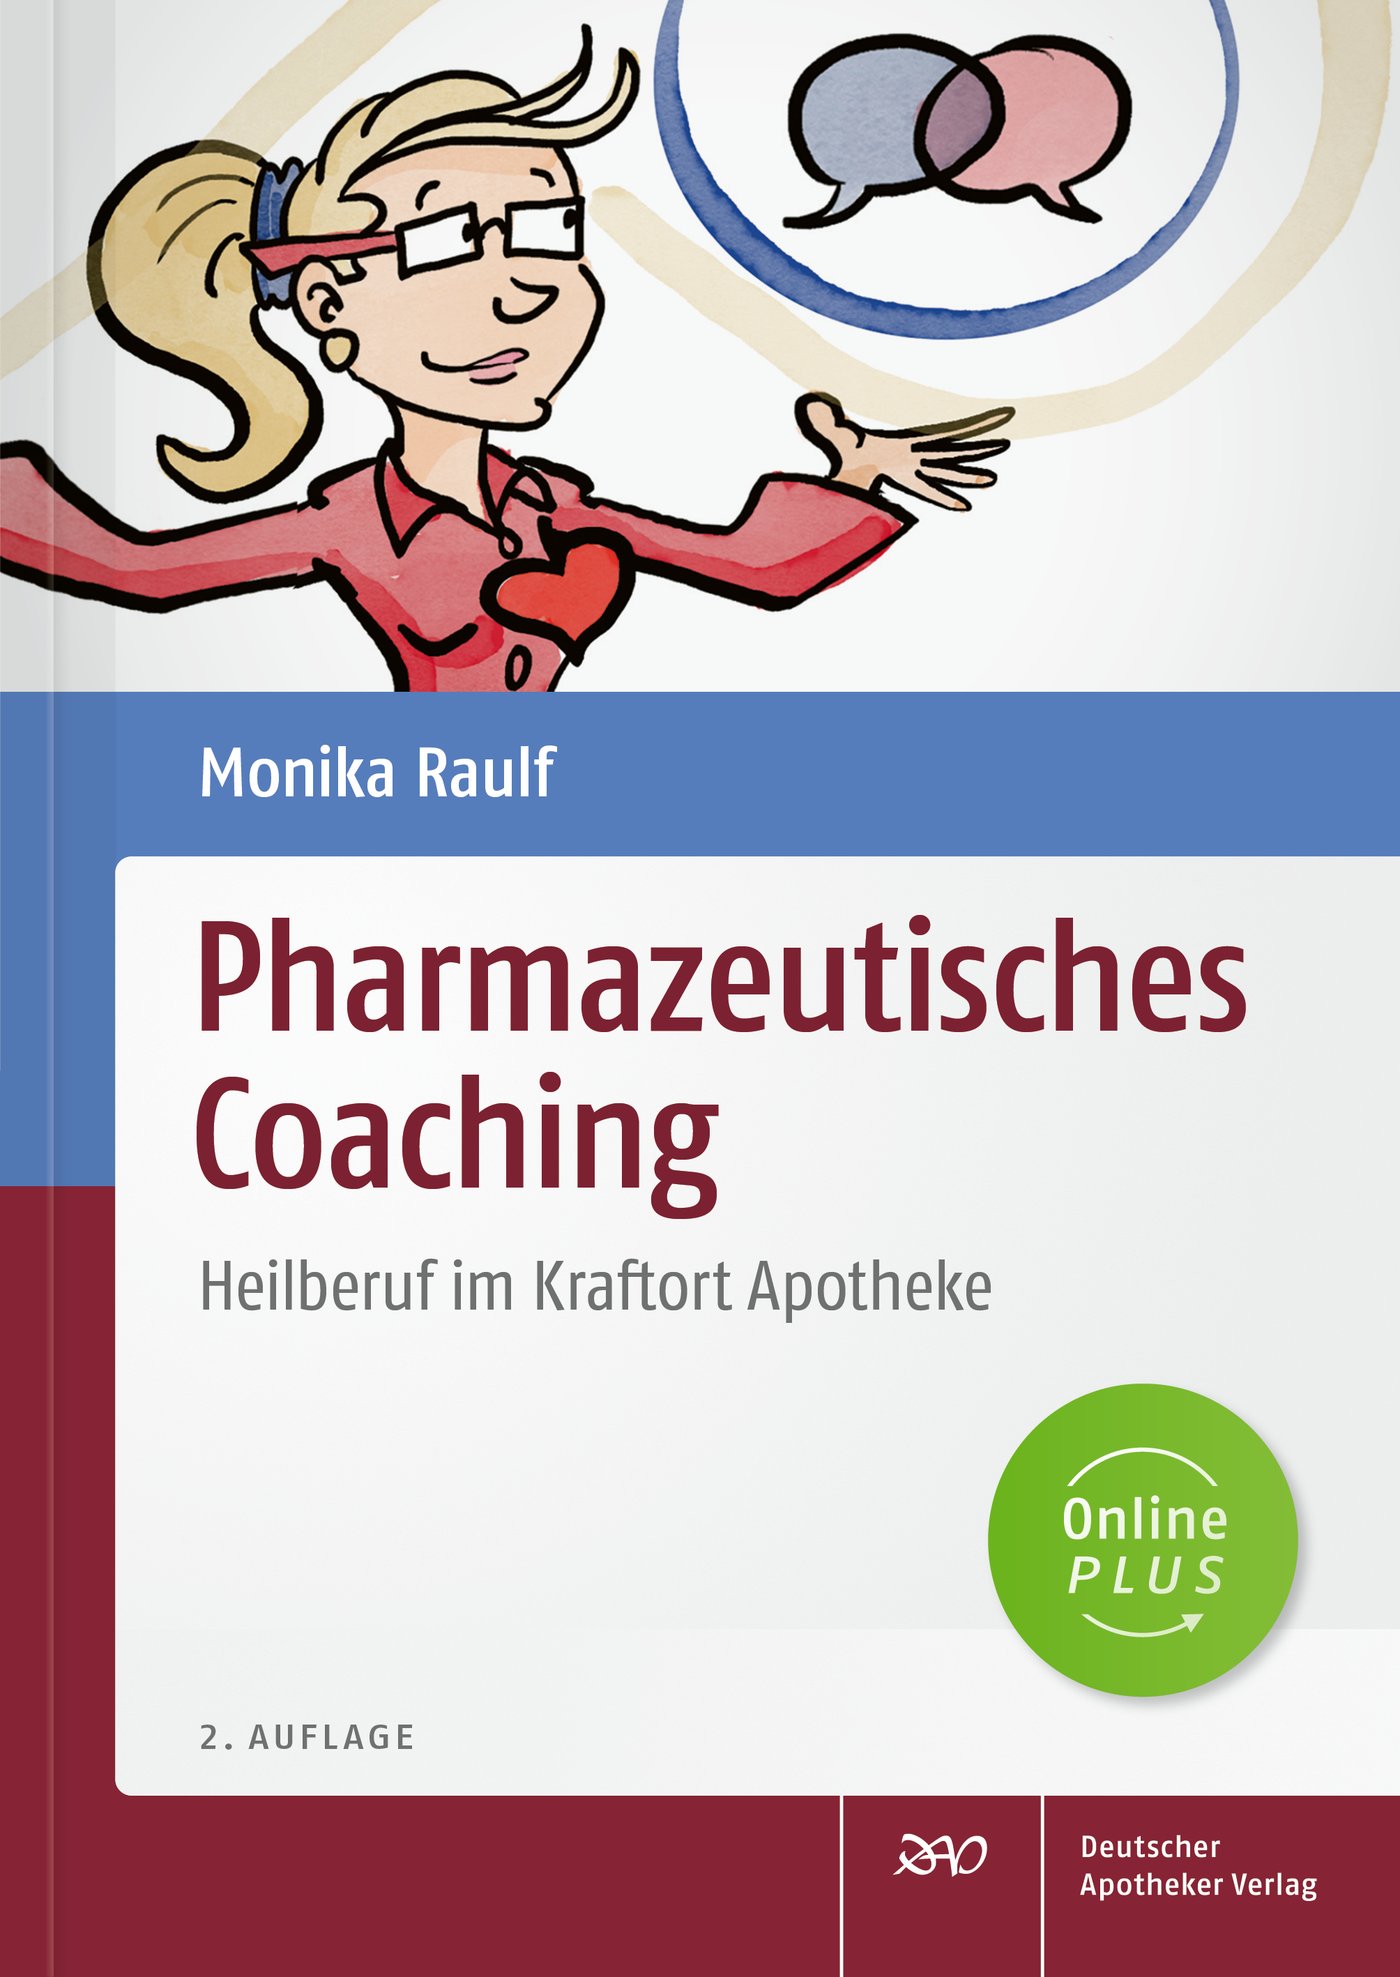 Pharmazeutisches Coaching